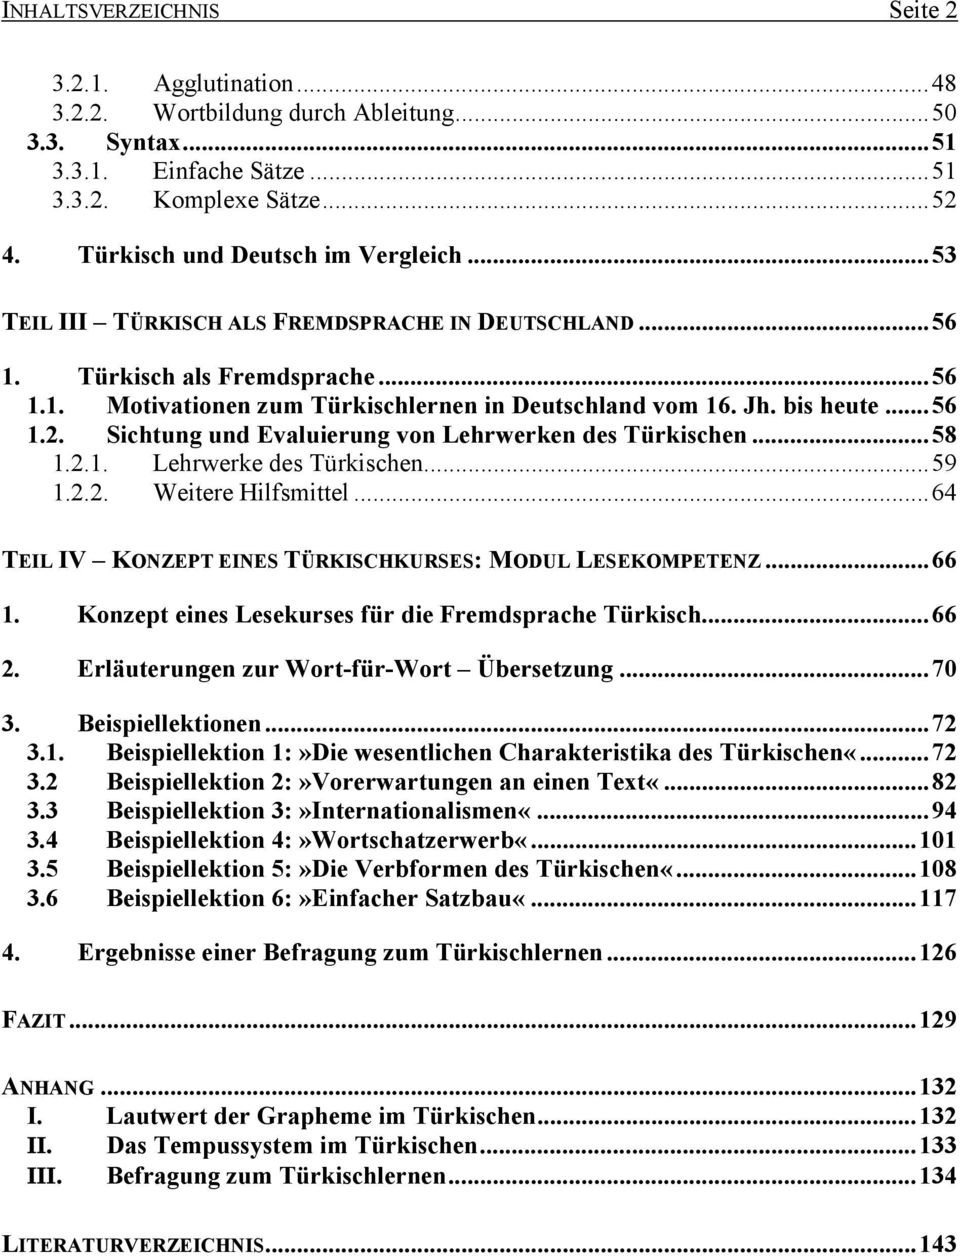 bis heute...56 1.2. Sichtung und Evaluierung von Lehrwerken des Türkischen...58 1.2.1. Lehrwerke des Türkischen...59 1.2.2. Weitere Hilfsmittel.